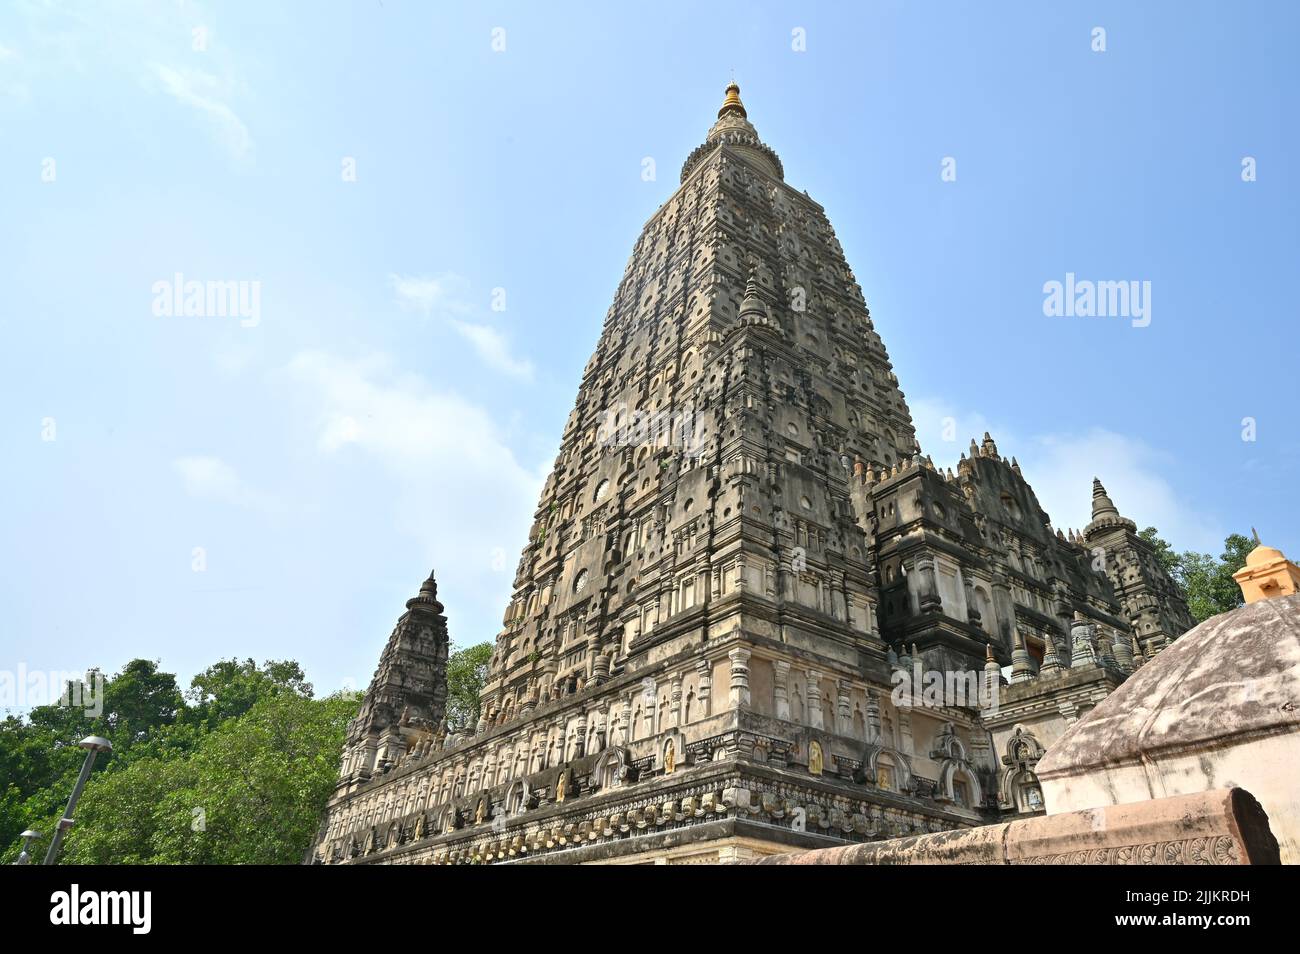 Ein niedriger Winkel Aufnahme des hohen Mahabodhi Mahavihar Tempels - Ort der Erleuchtung von Buddha Stockfoto